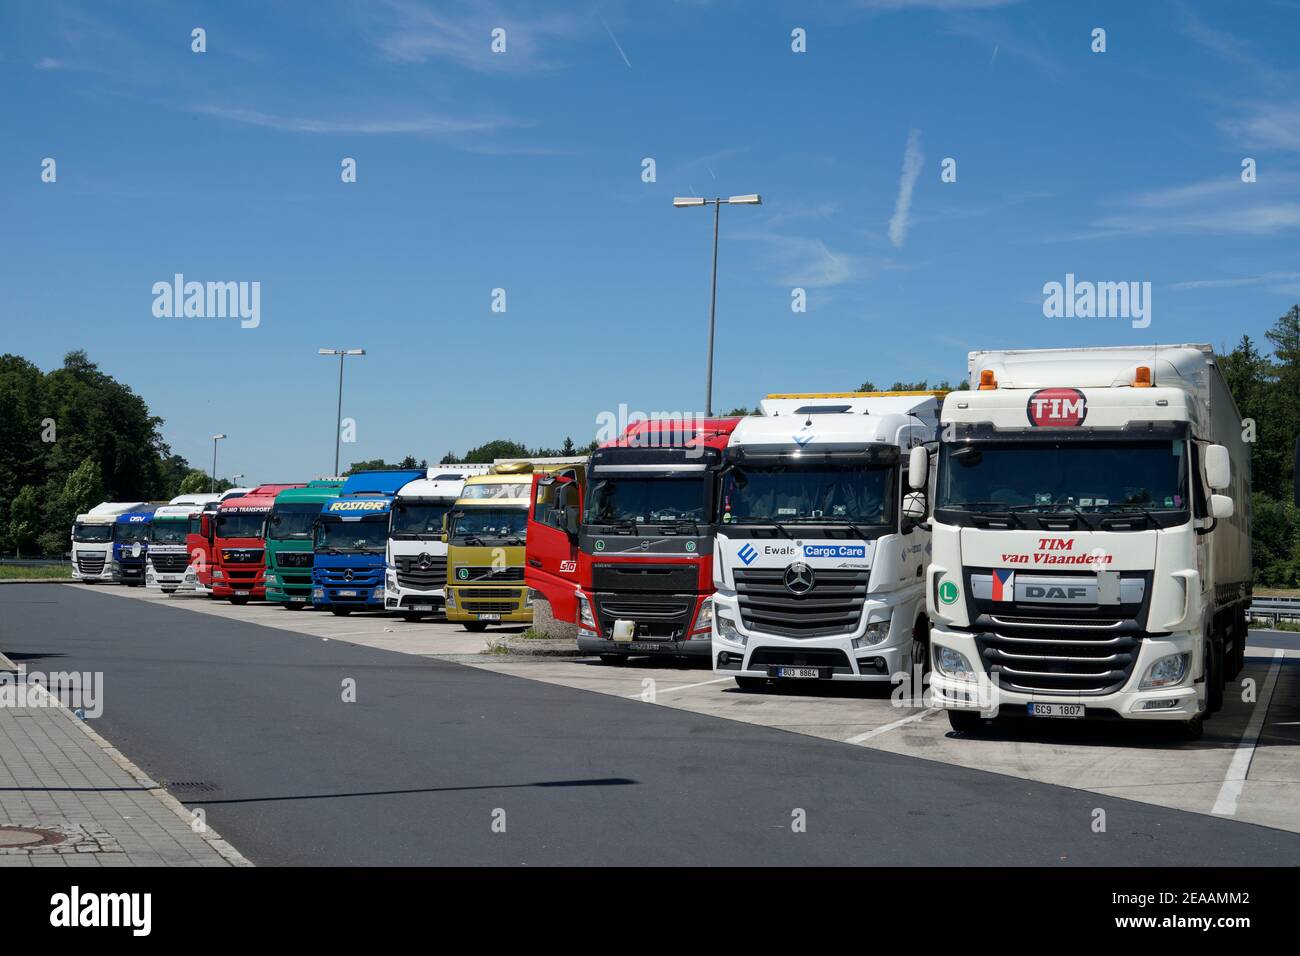 Parcheggio per camion immagini e fotografie stock ad alta risoluzione -  Alamy